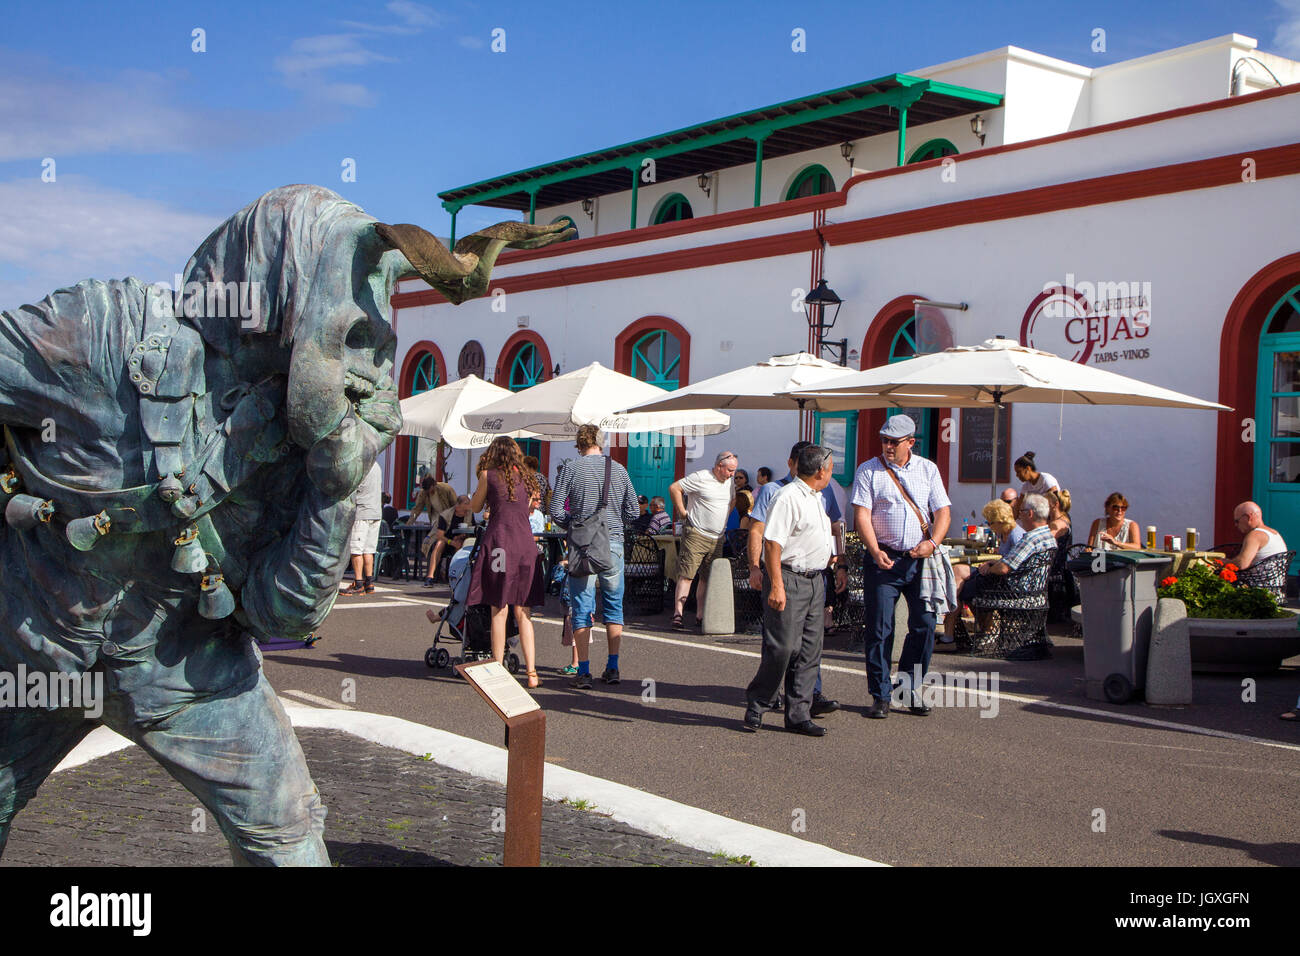 Elegua, mourir, teufelsstatue marktstaende sonntagsmarkt strassencafe und, dans Teguise, Lanzarote, kanarische inseln, europa | elegua, un diable statue, str Banque D'Images